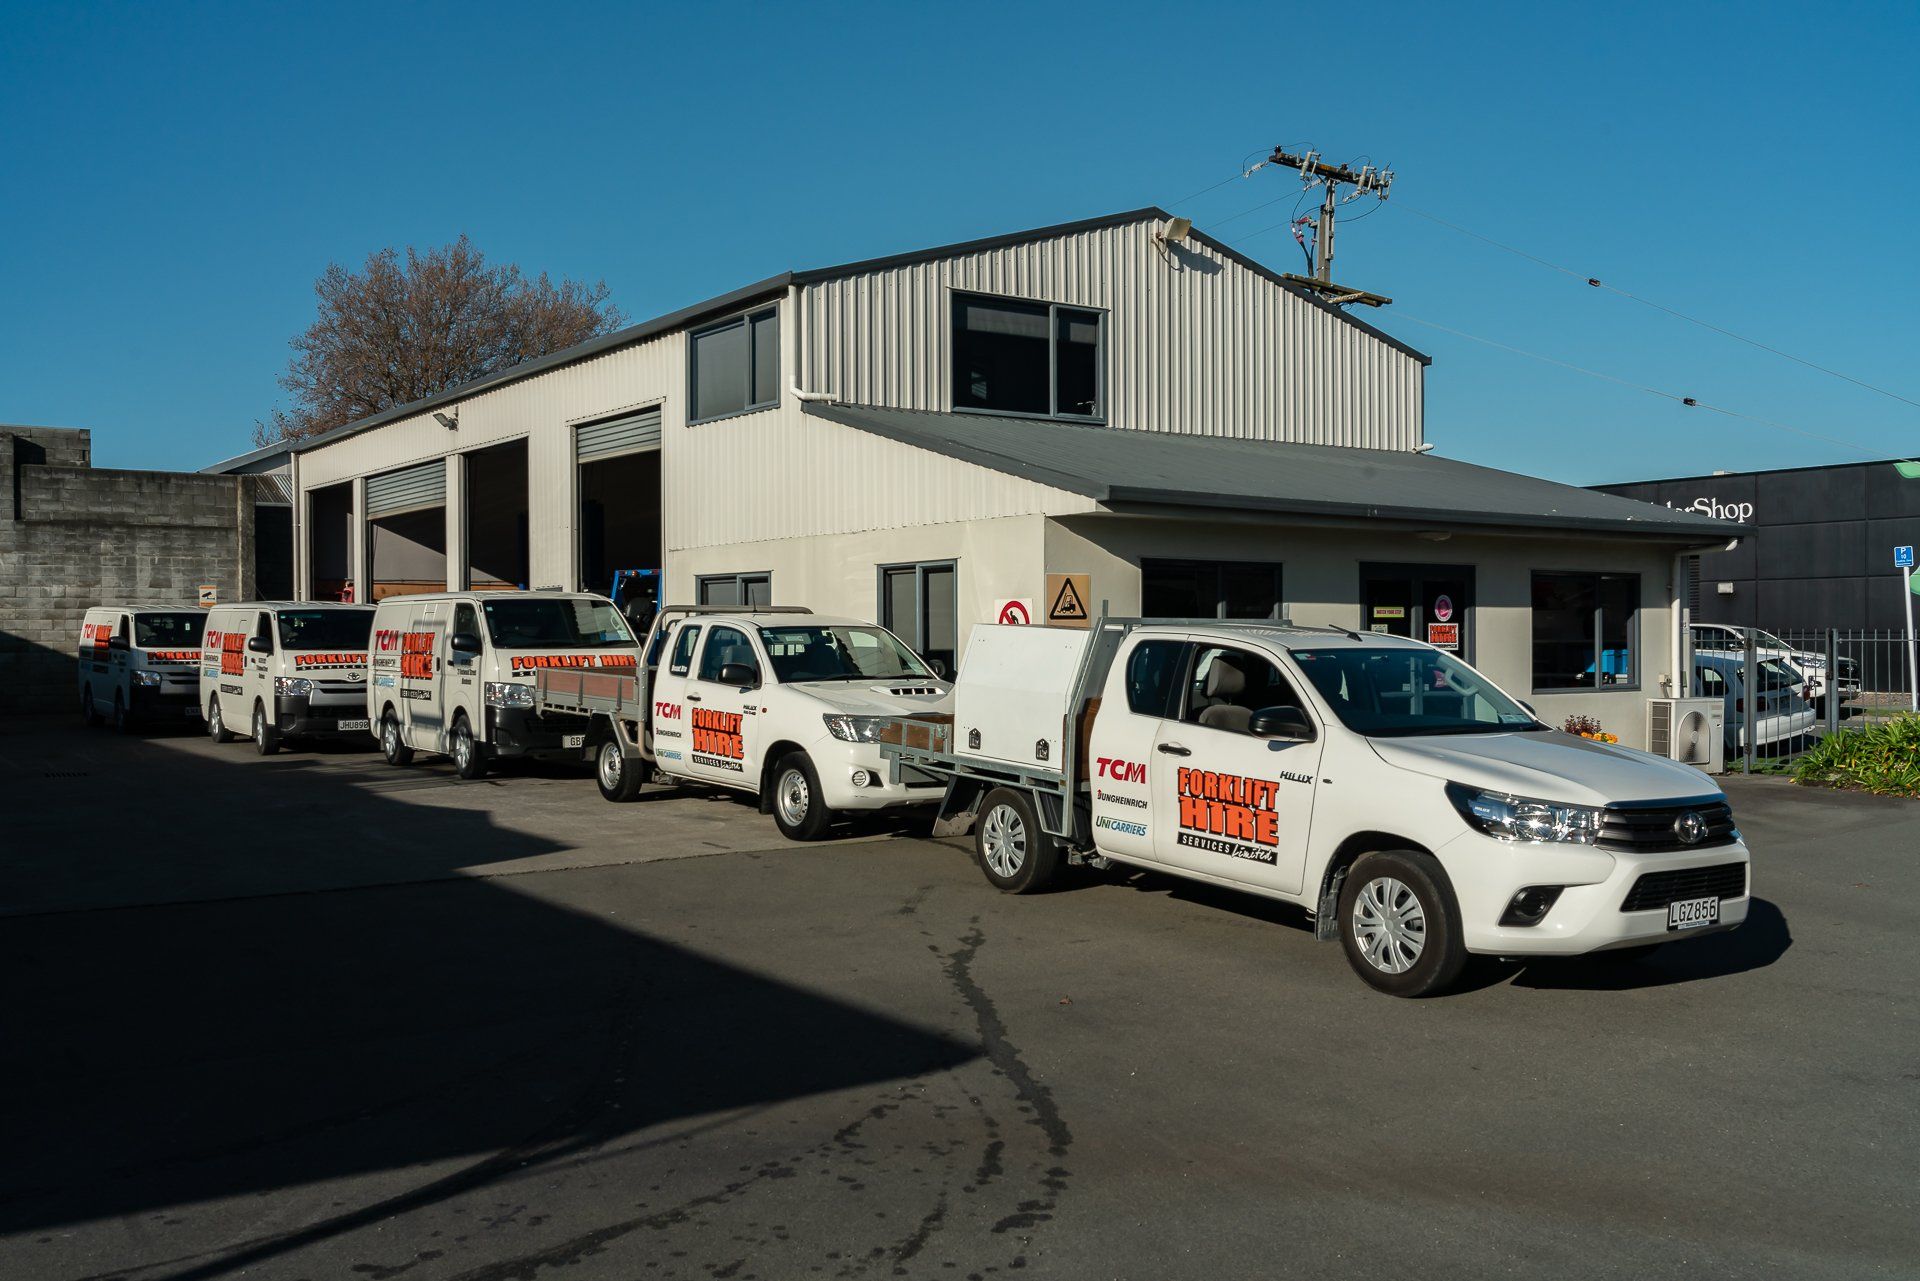 Forklift Hire Services Ltd vehicle fleet in Blenheim NZ